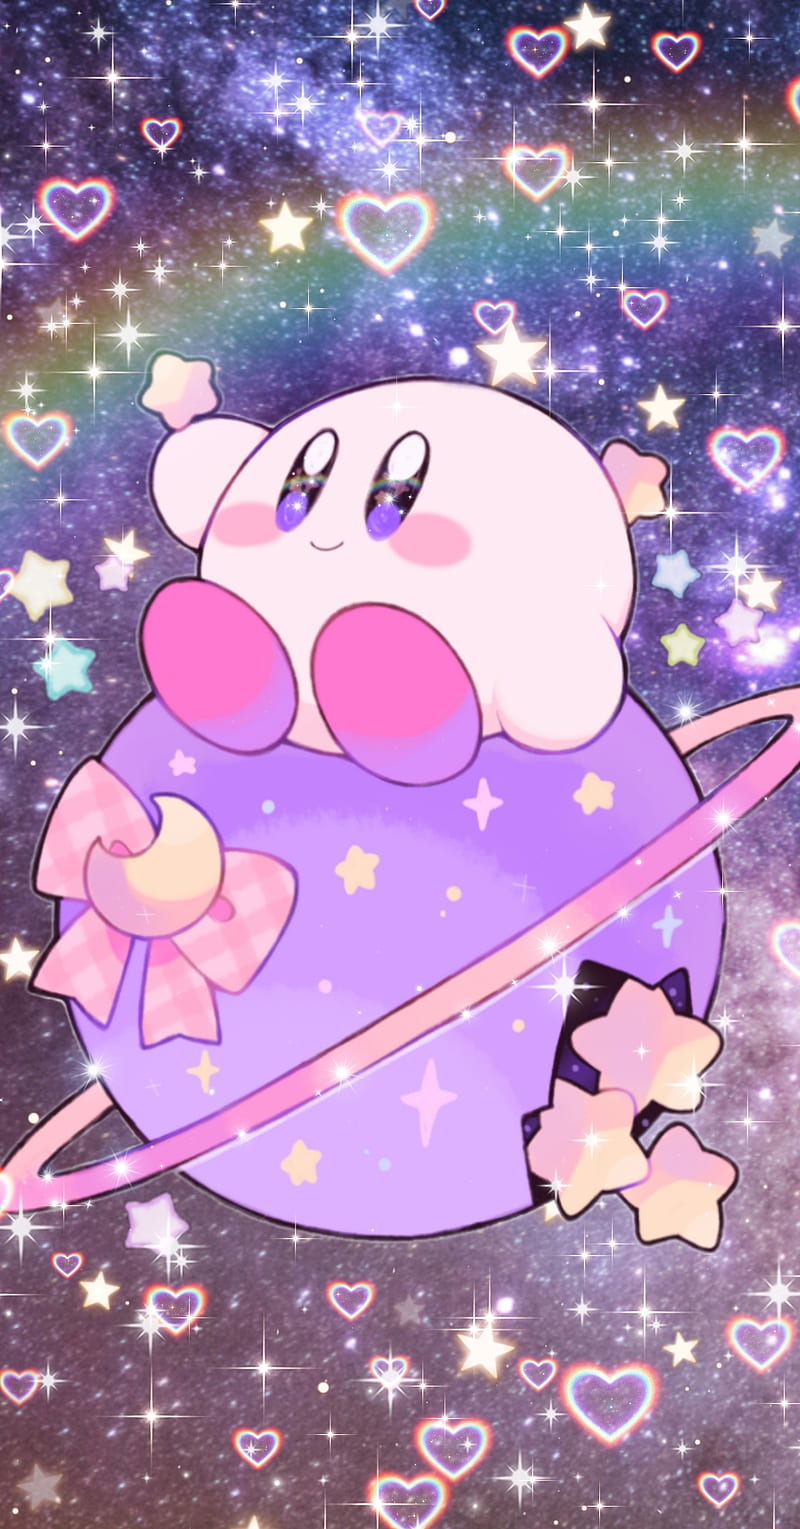 kirbyplanet là trang web về trò chơi Kirby với những bức ảnh đầy màu sắc và vui nhộn. Nếu bạn là fan của thể loại game này, hãy đến với kirbyplanet và trải nghiệm thế giới đầy màu sắc của Kirby!